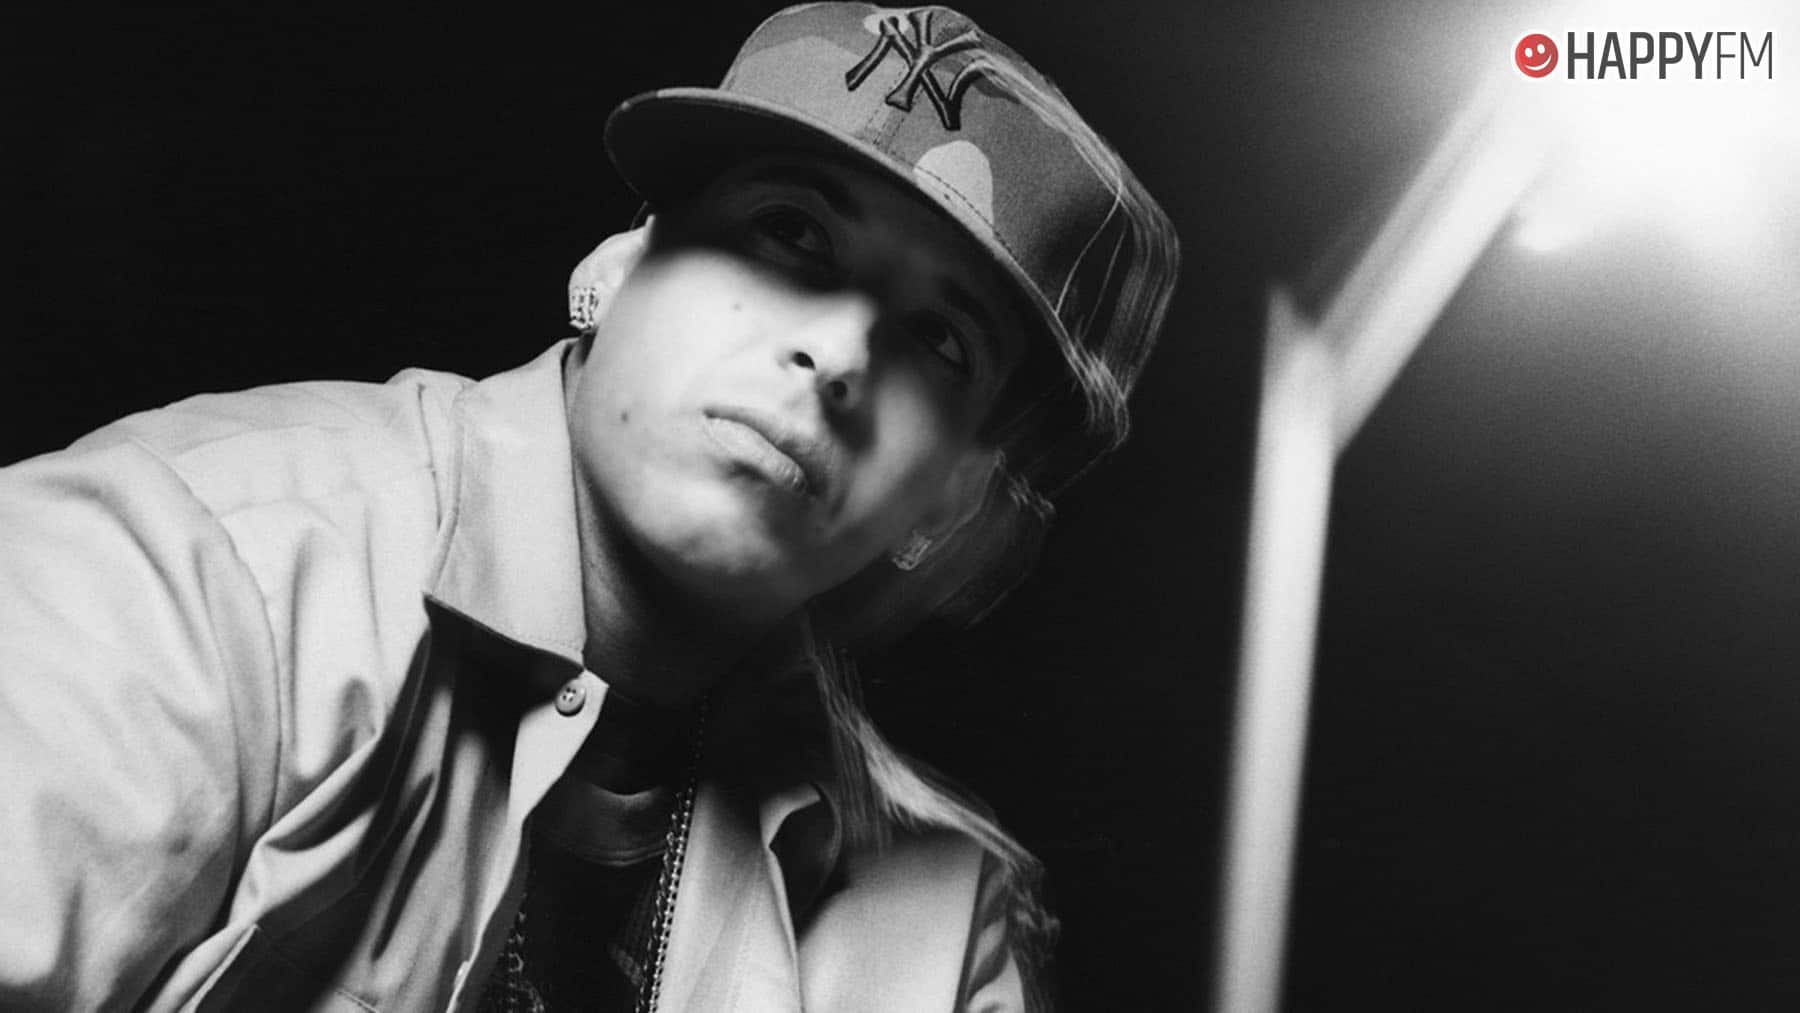 ‘Dale caliente’, de Daddy Yankee: letra, historia y vídeo